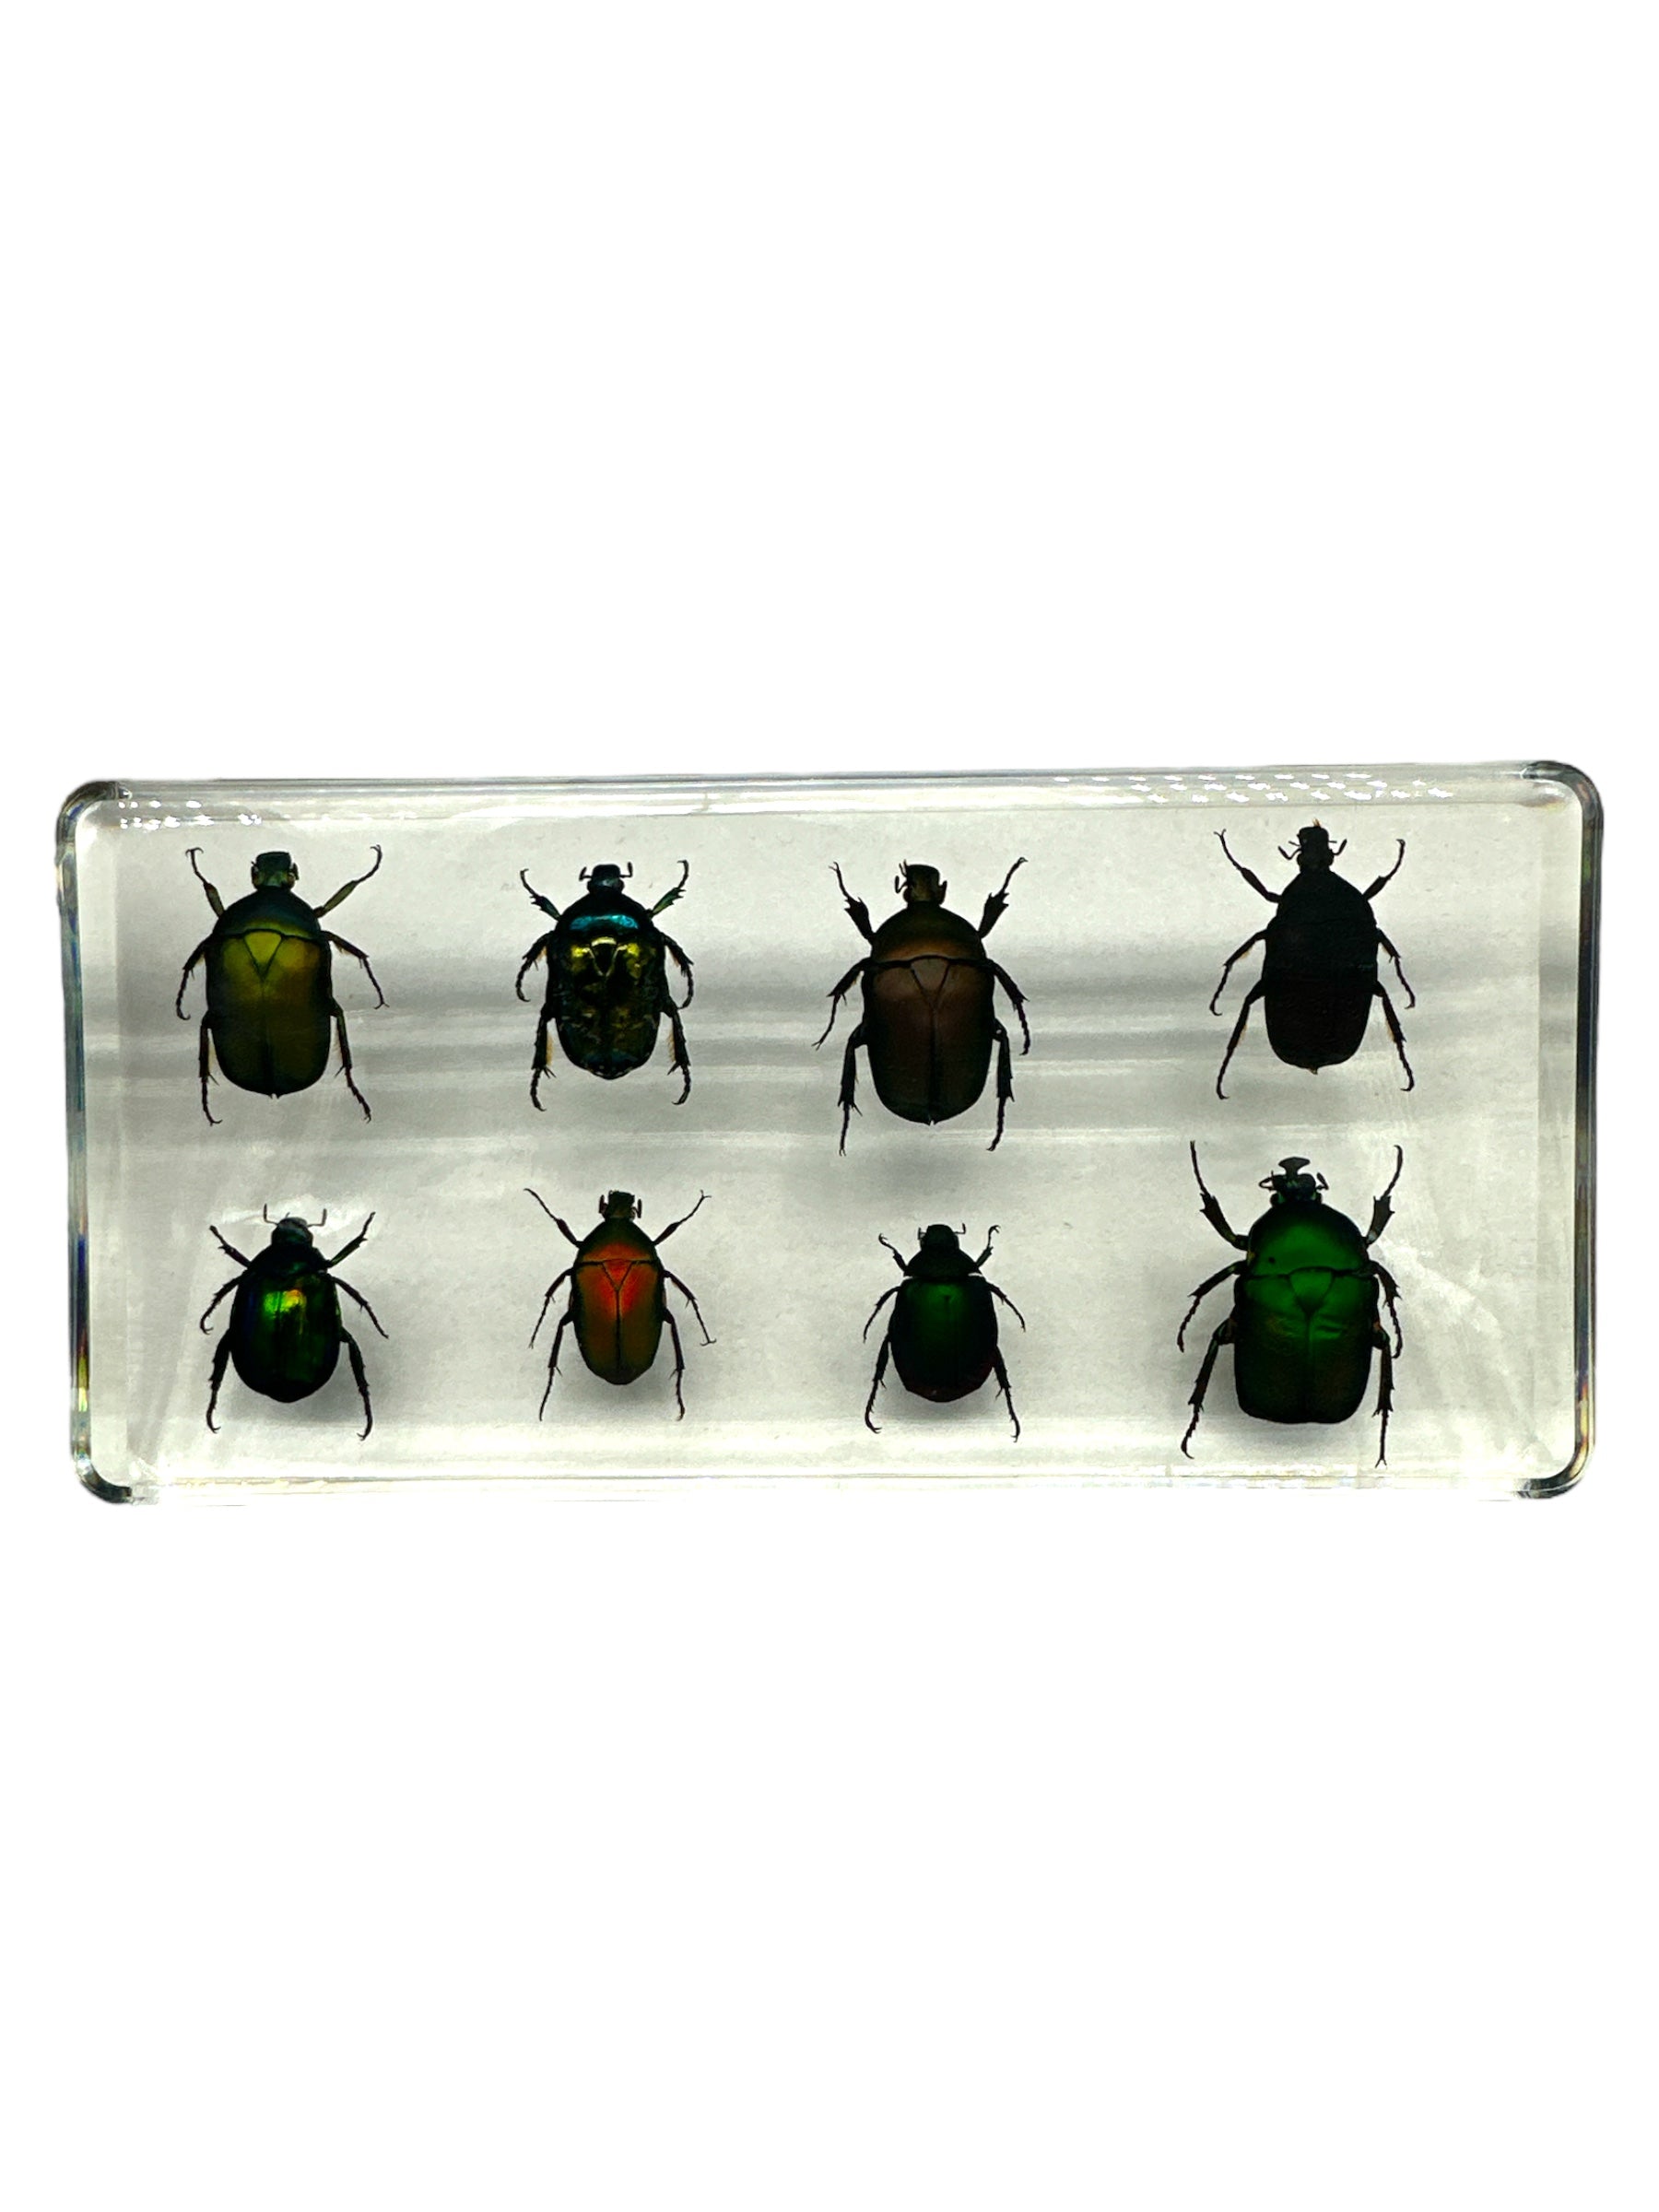 8 Rose Chafer Beetles Set - Specimen In Resin